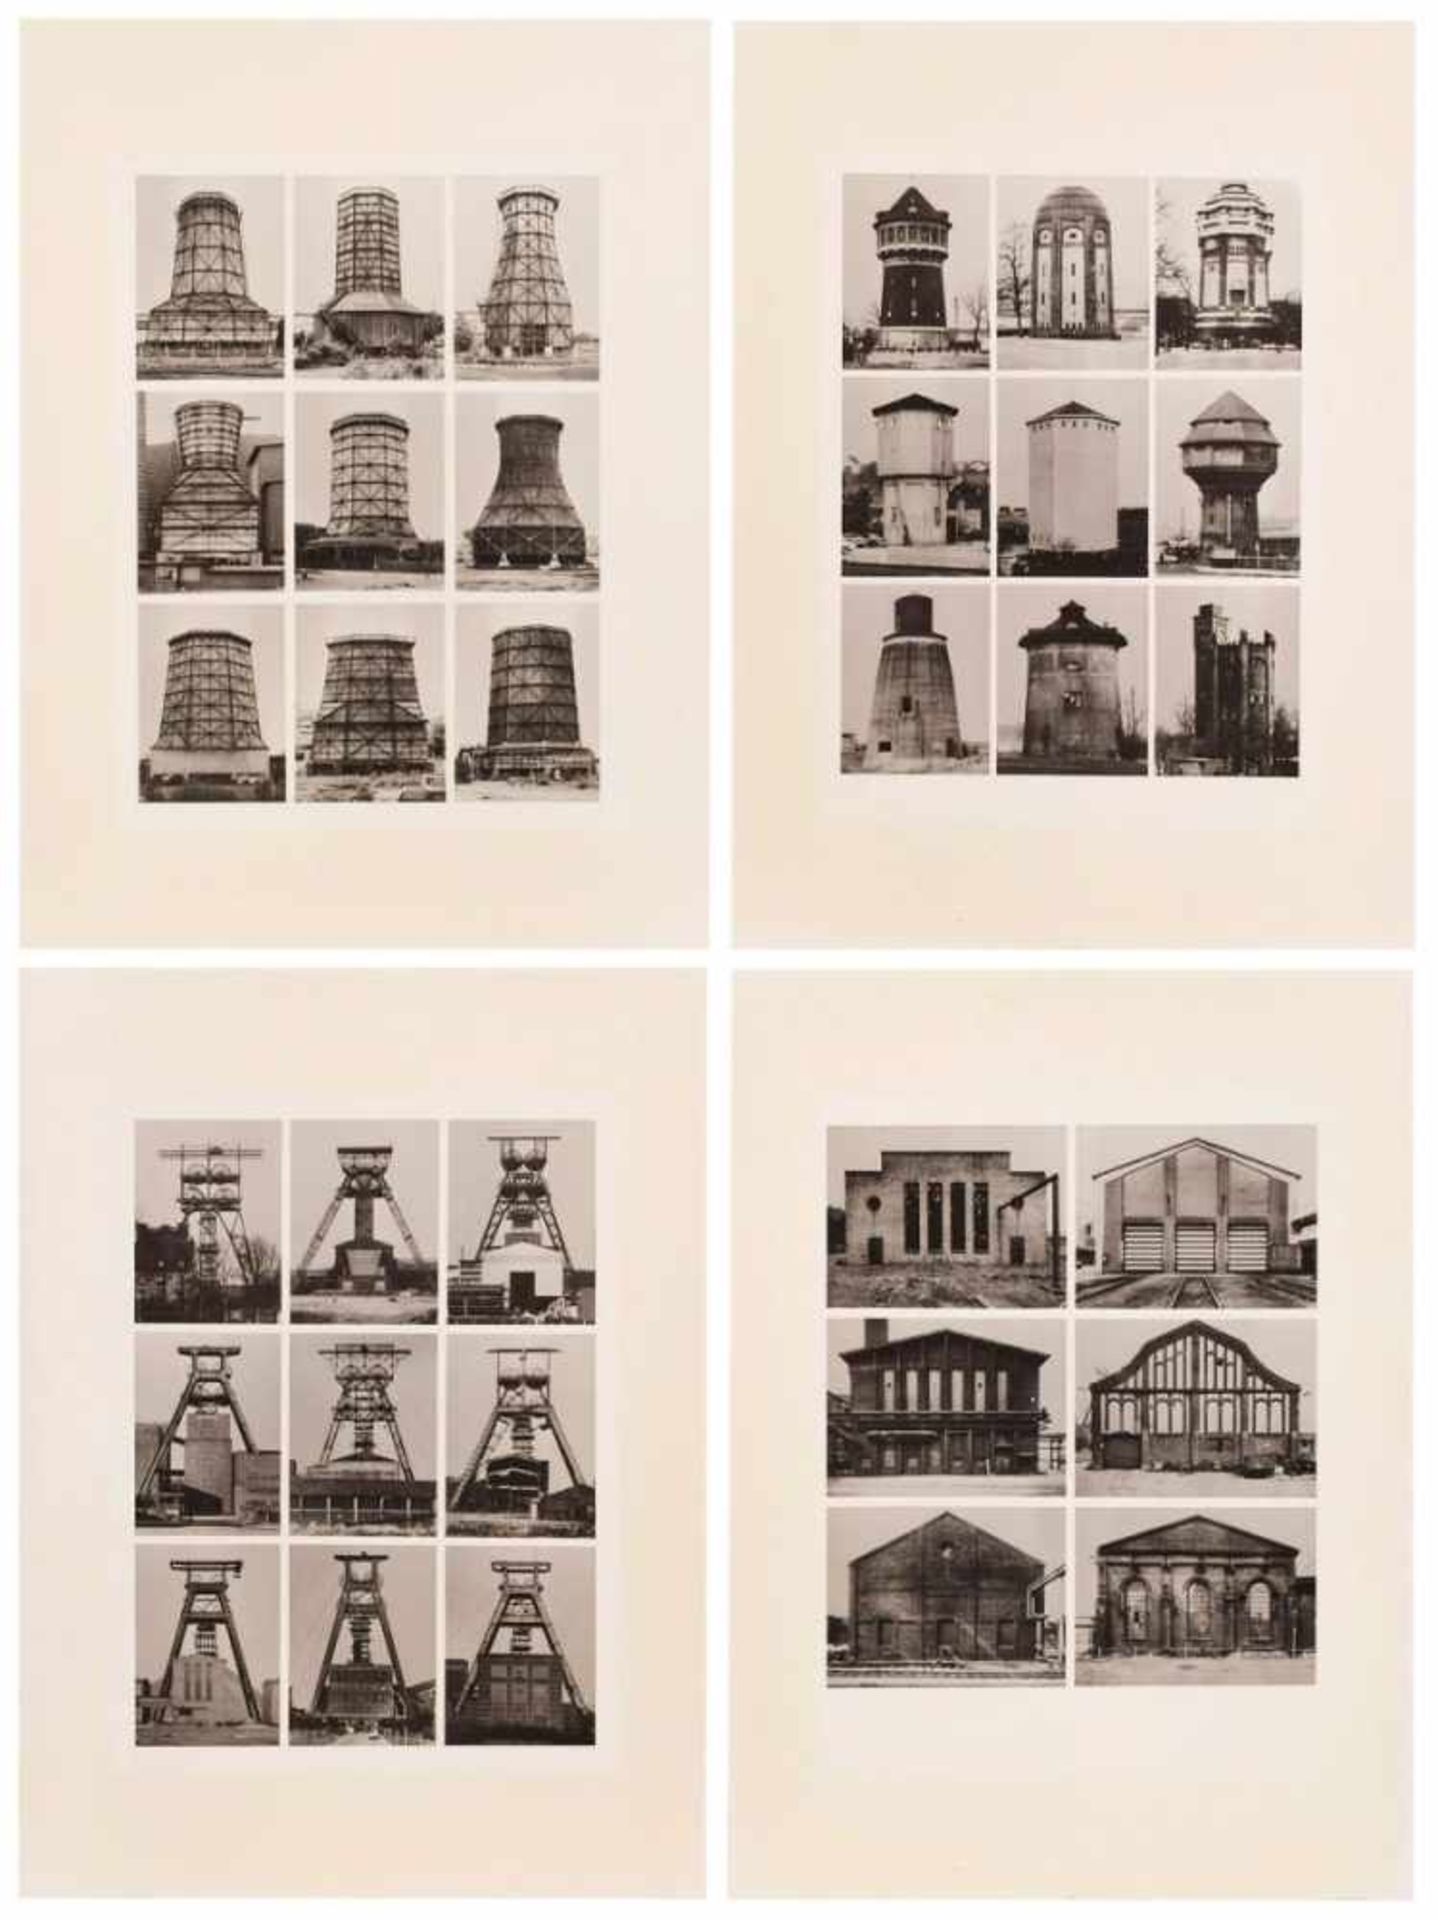 4 s/w Fotosnach Bernd & Hilla Becher "Industriebauten" um 1970 auf Baryt. 39,8 x 29,9 cm, o.R. etwas